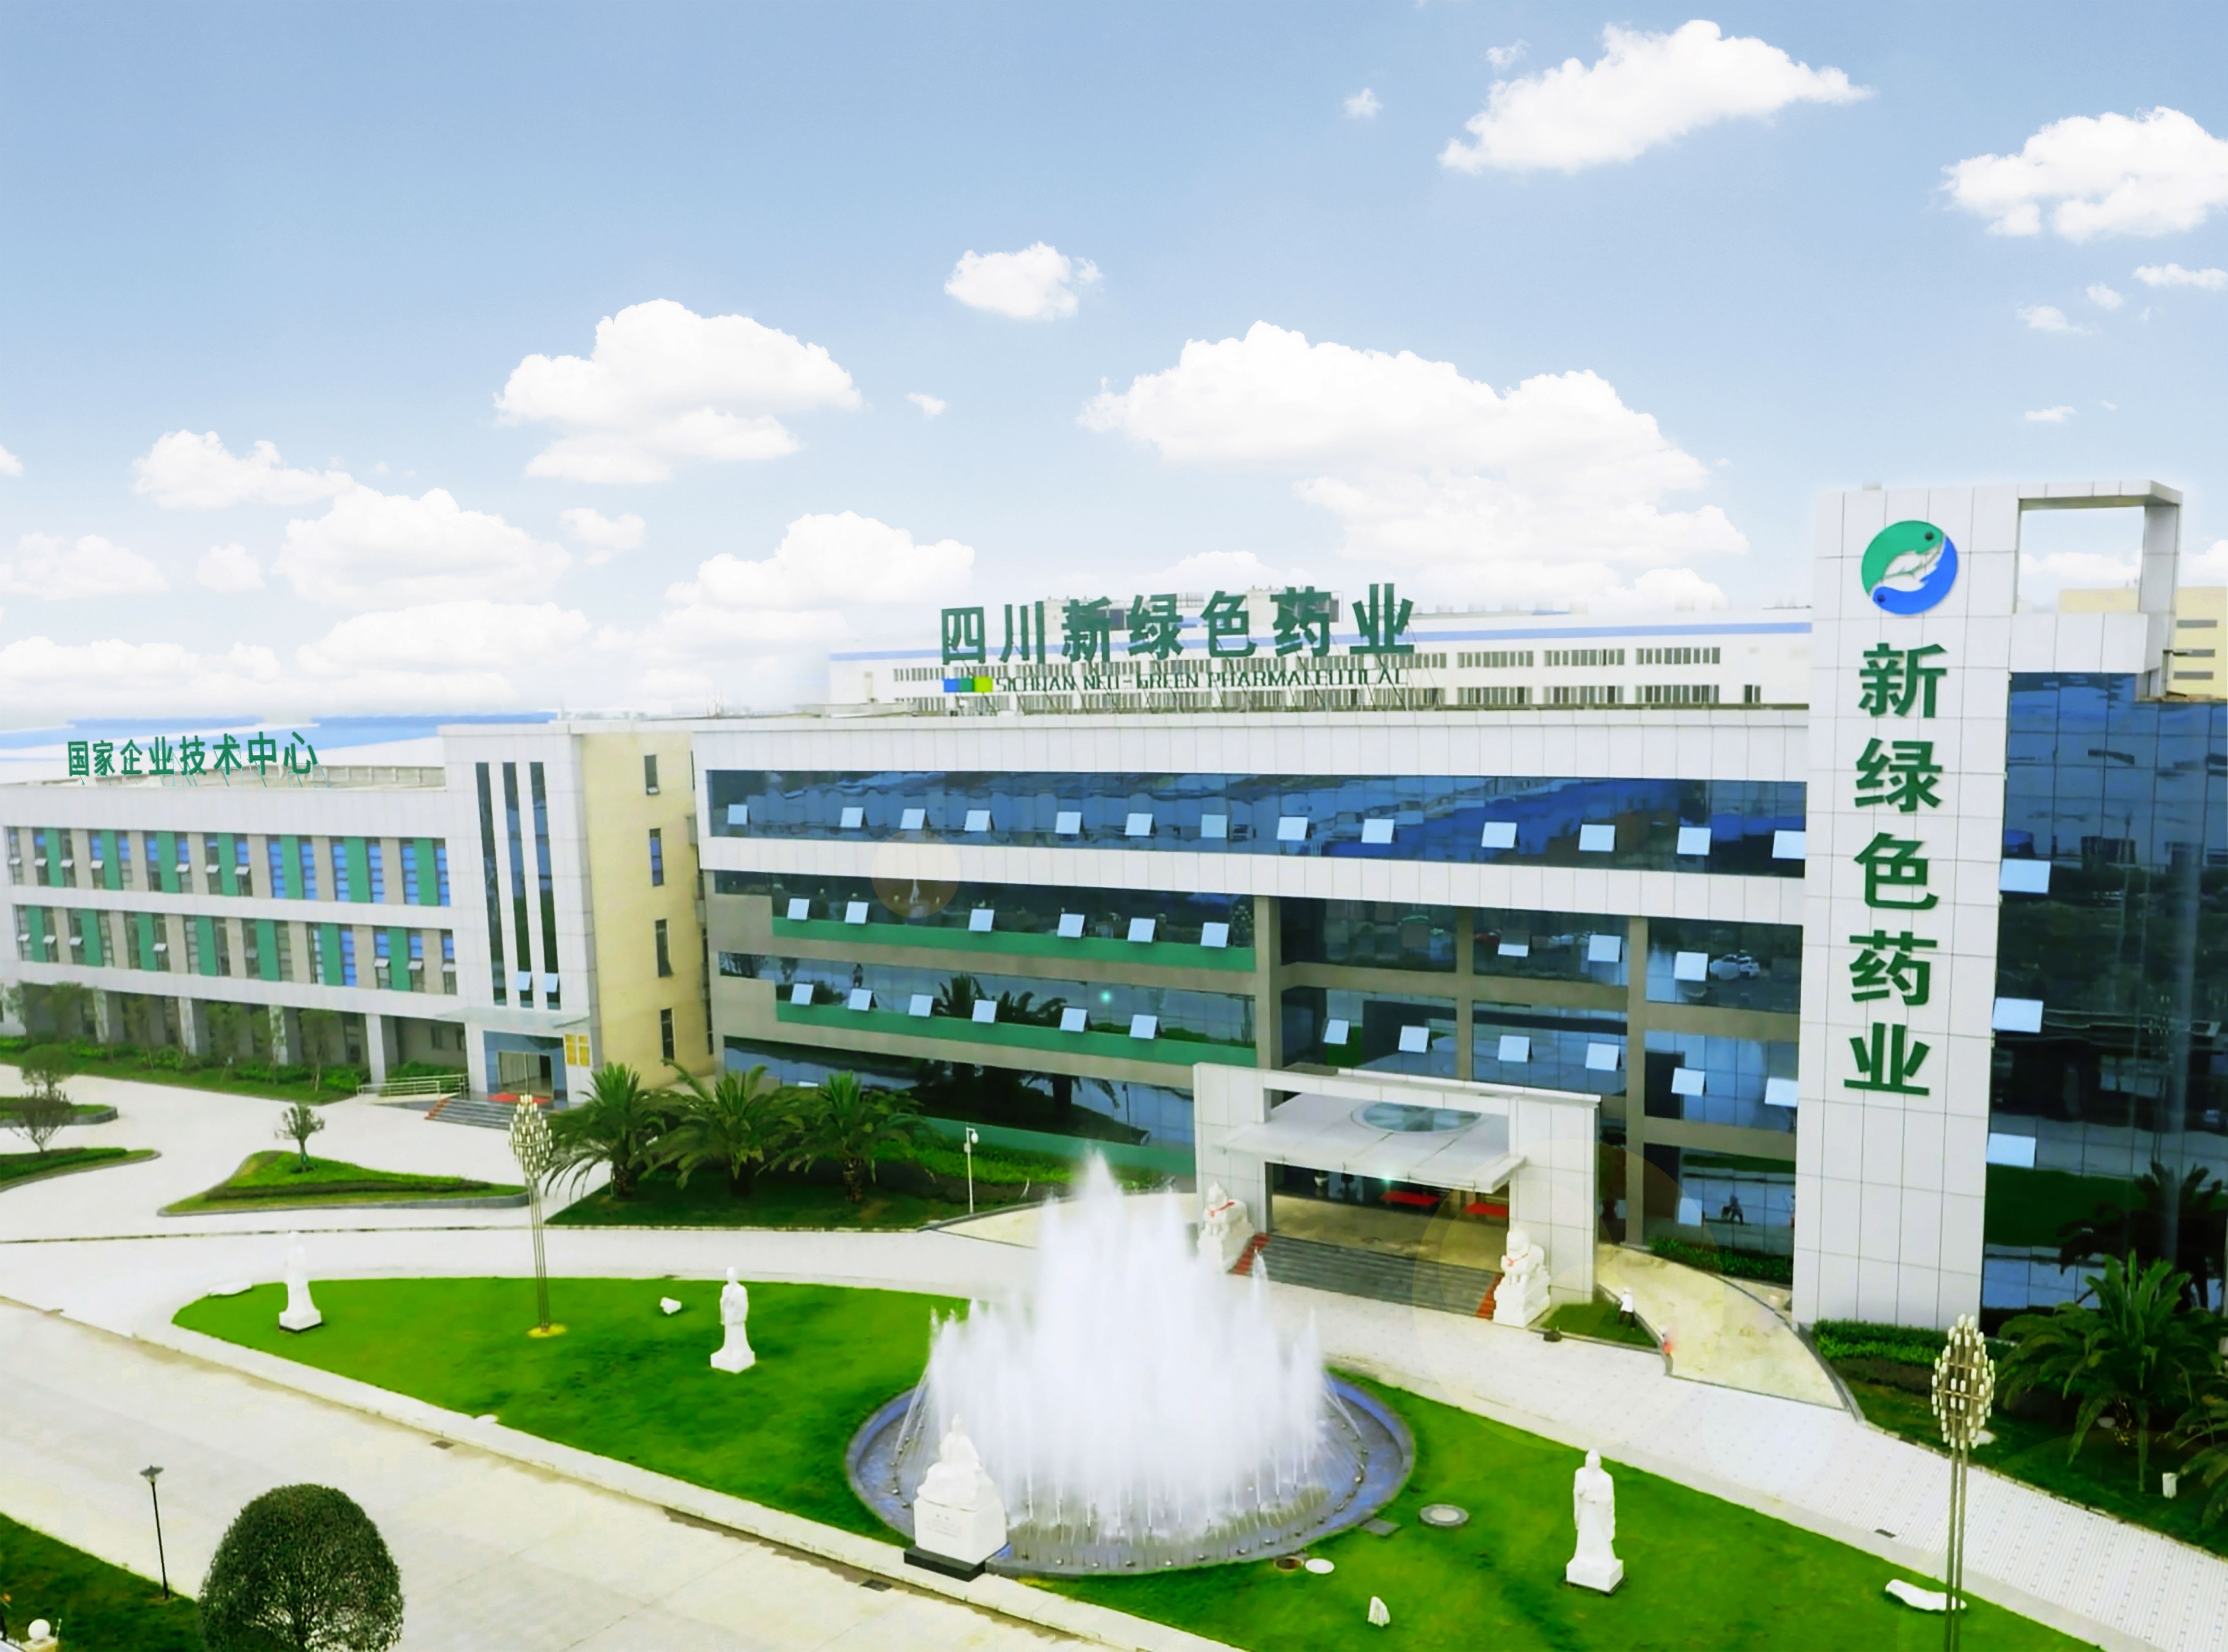 四川新綠色藥業科技發展有限公司2022年第二季度環境檢測報告